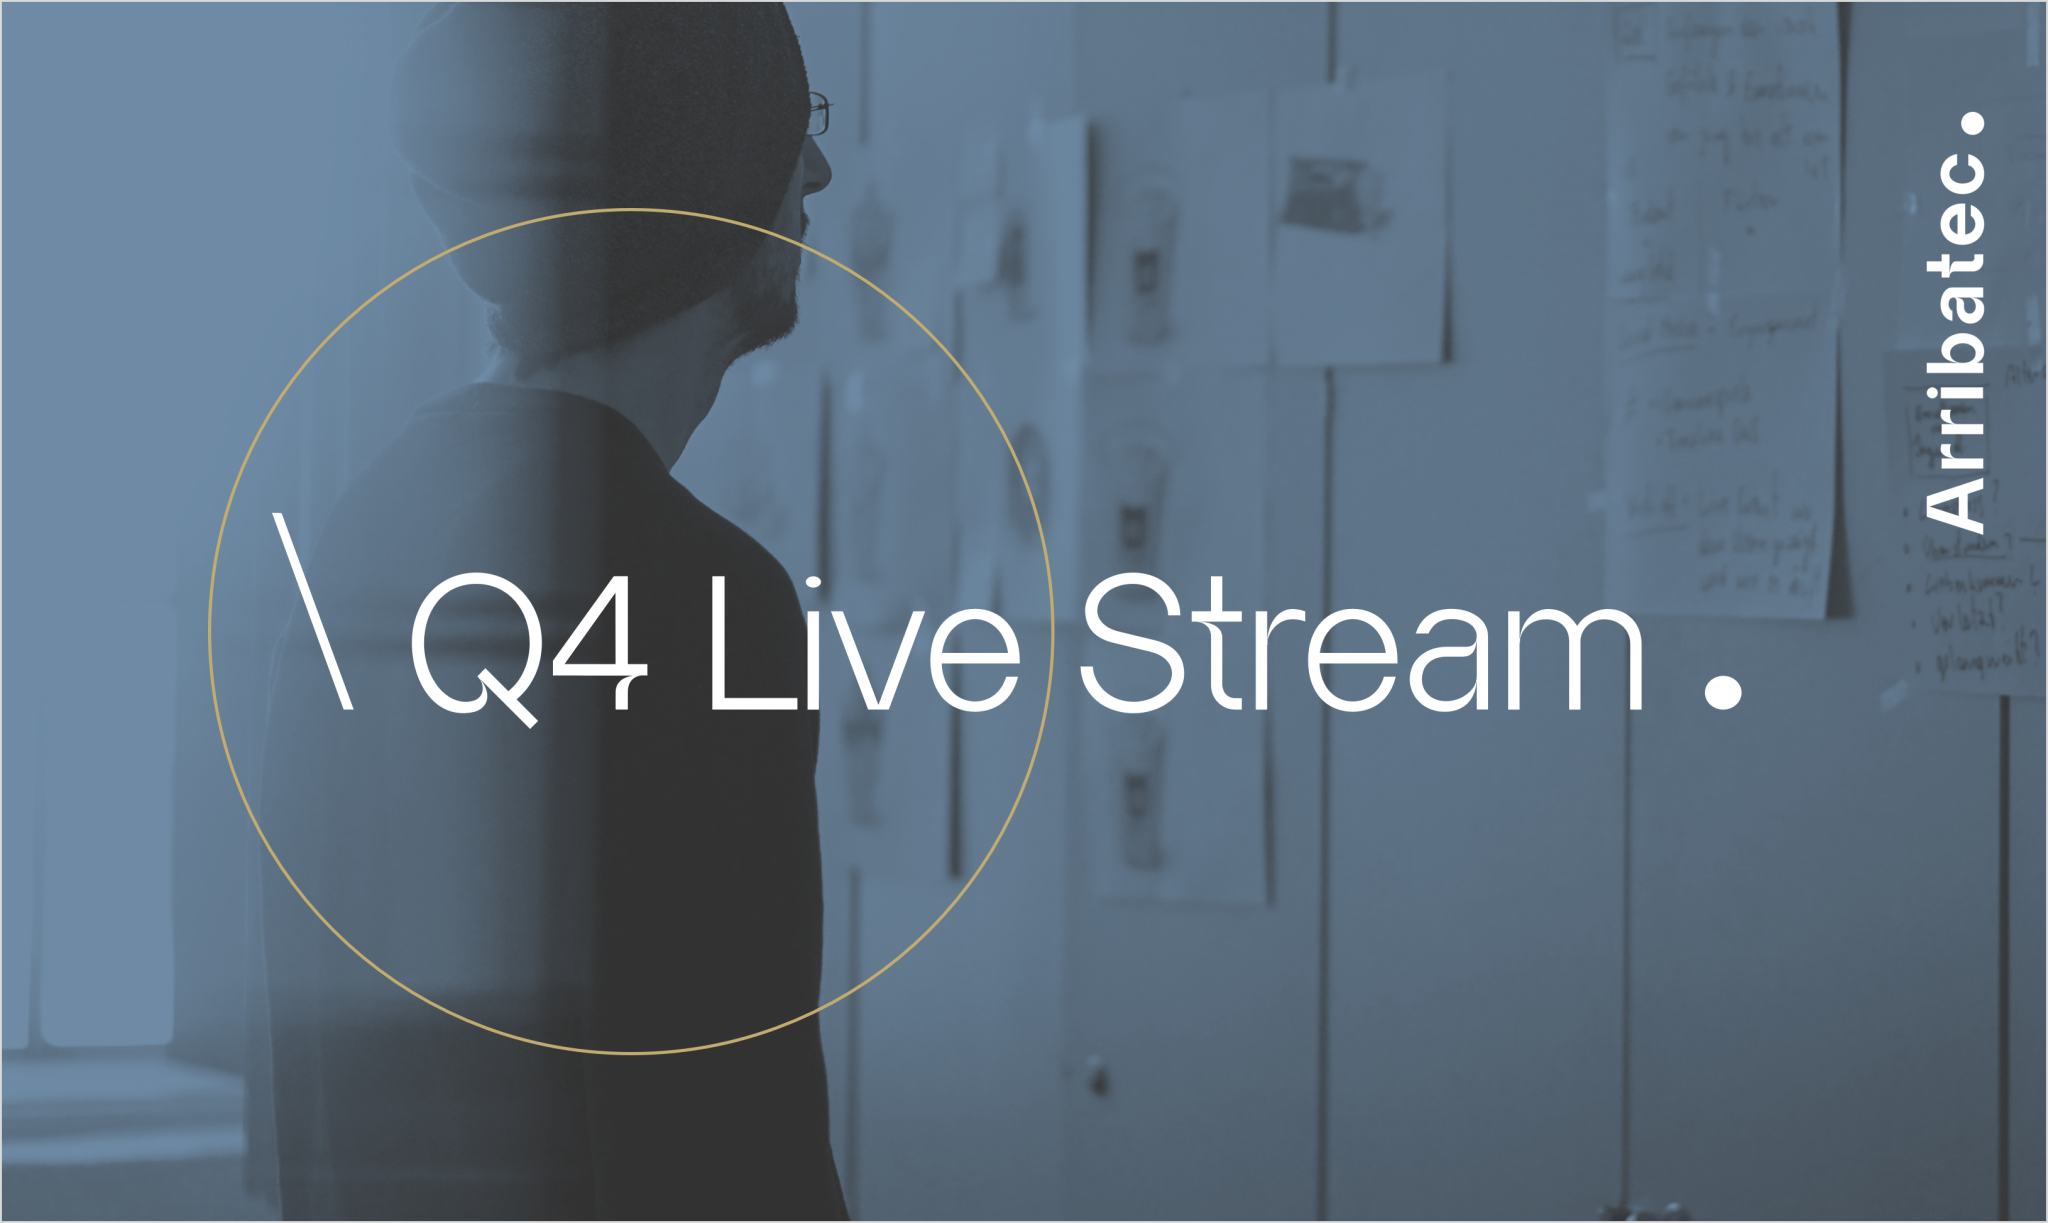 Q4 Live stream